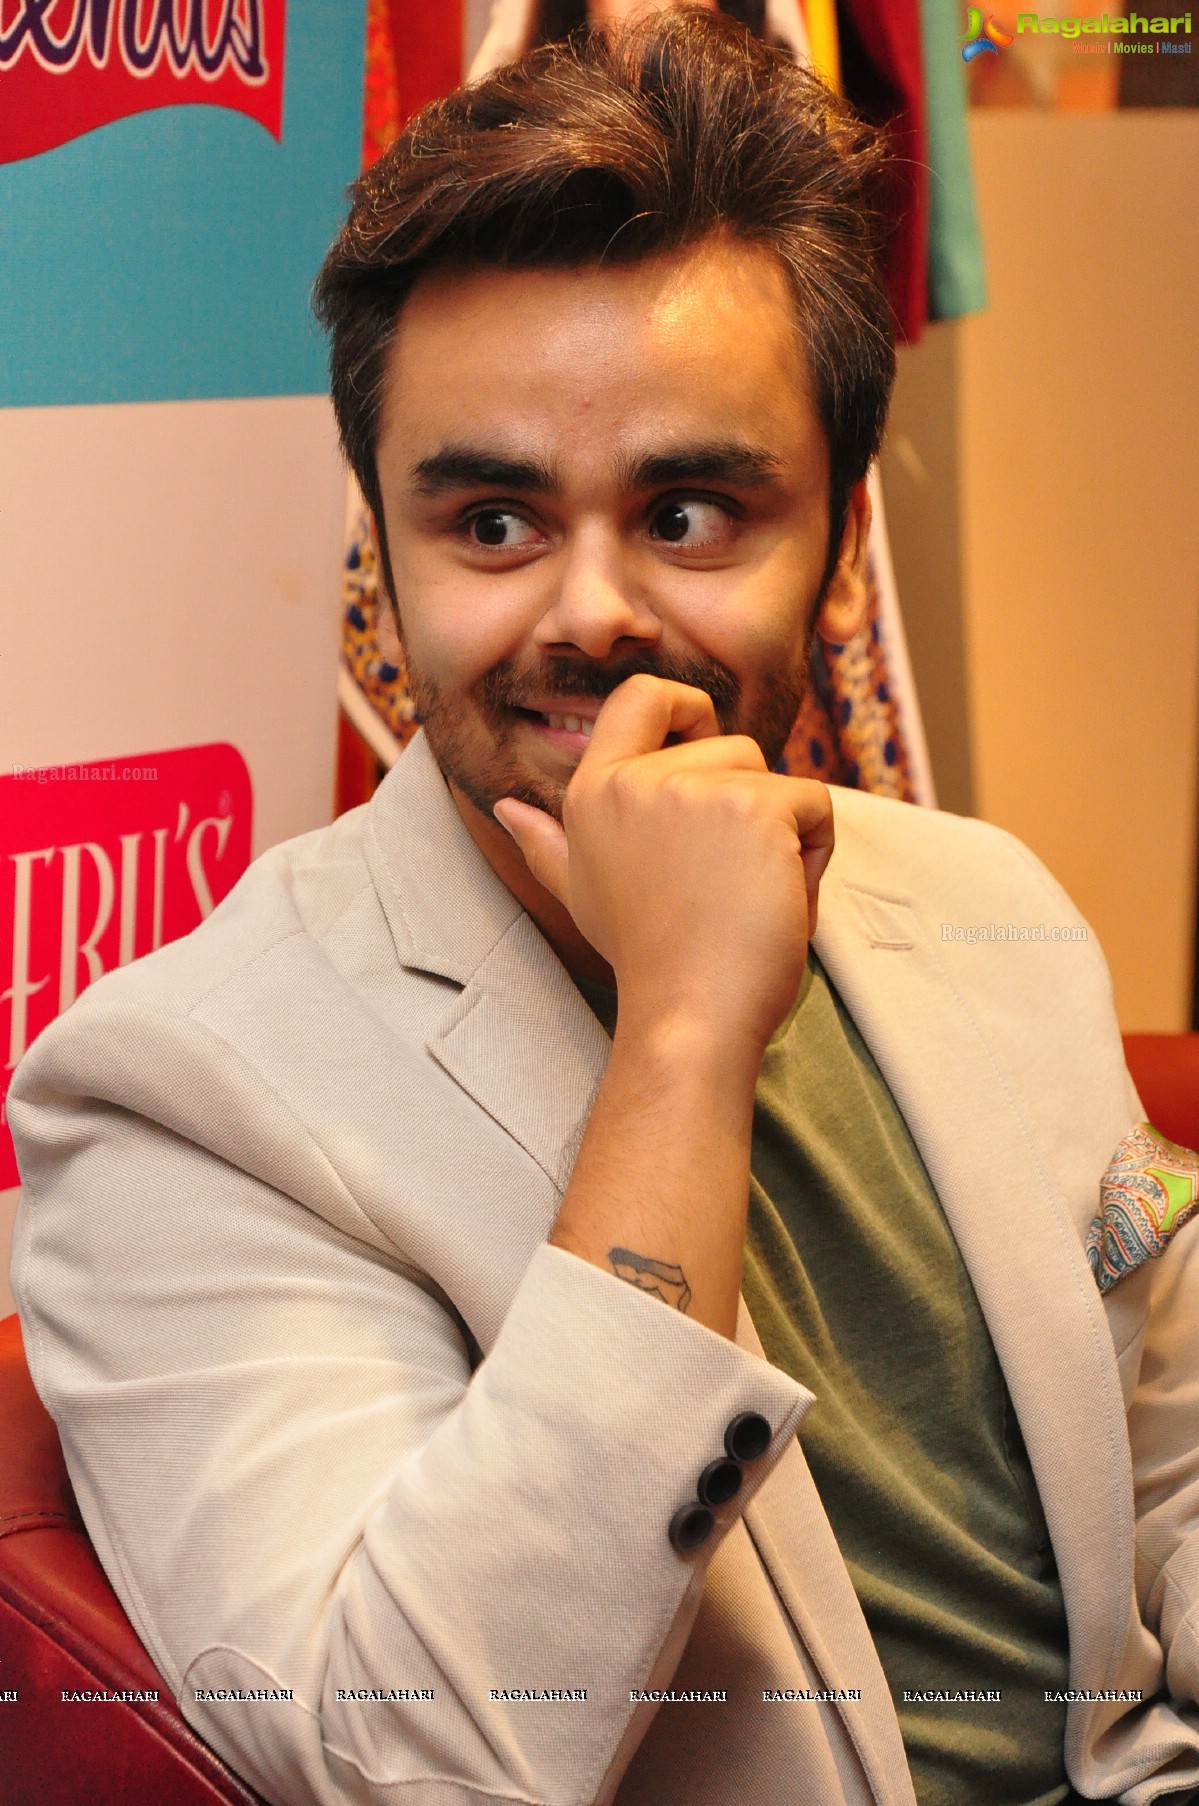 Rakul Preet Singh launches Label Bazaar 2nd Edition at Neeru's Emporio, Hyderabad